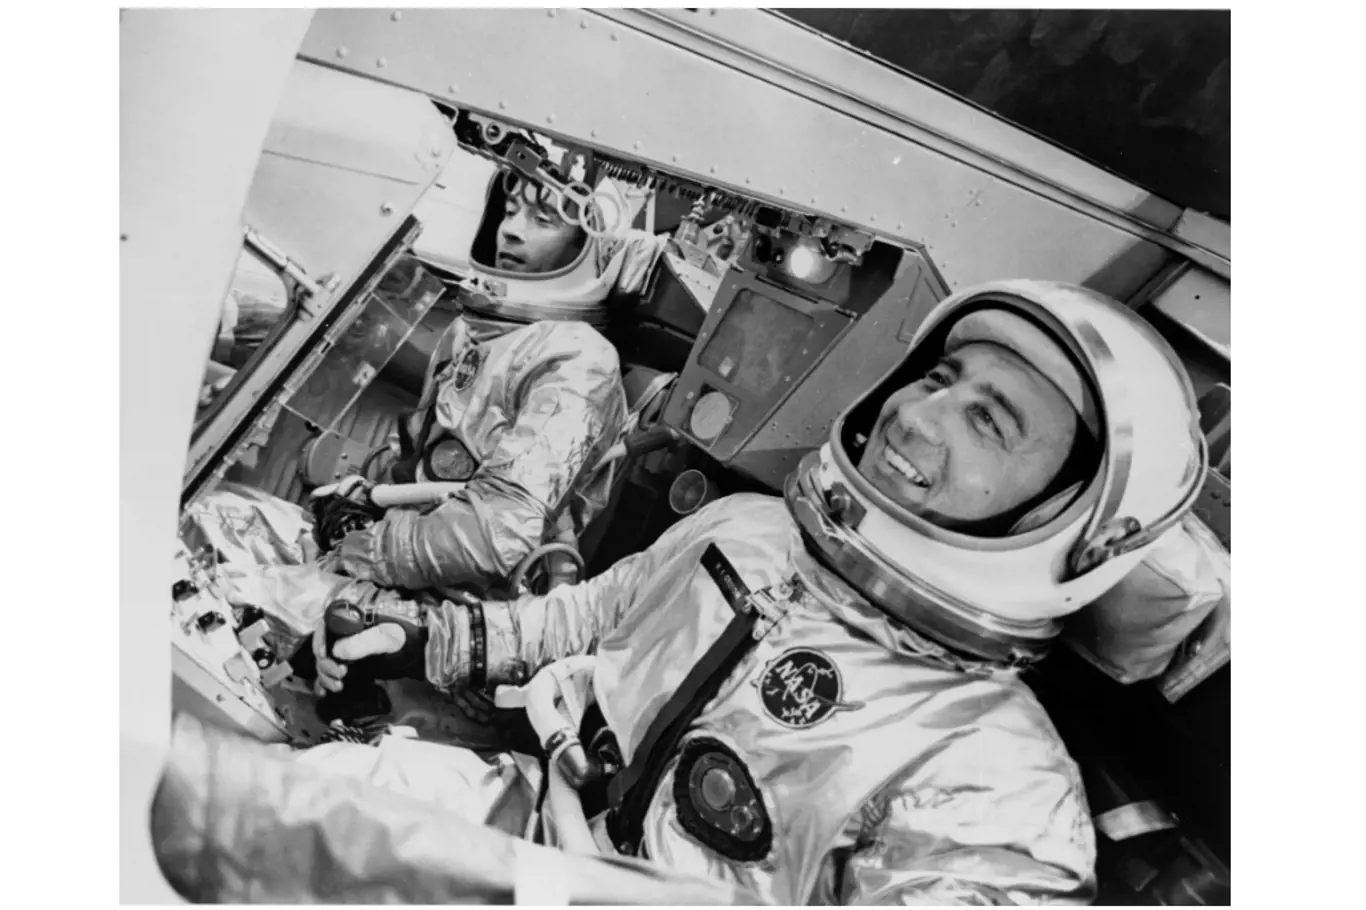 John Young (vlevo) a Gus Grissom letěli 23. března 1965 při prvním letu Gemini 3 s posádkou. Zde jsou zobrazeni v simulátoru kosmické lodi v továrně McDonnell v St. Louis. Jedním z dalších "pasažérů" skutečného letu byl sendvič s hovězím masem, který Young propašoval na palubu v kapse.